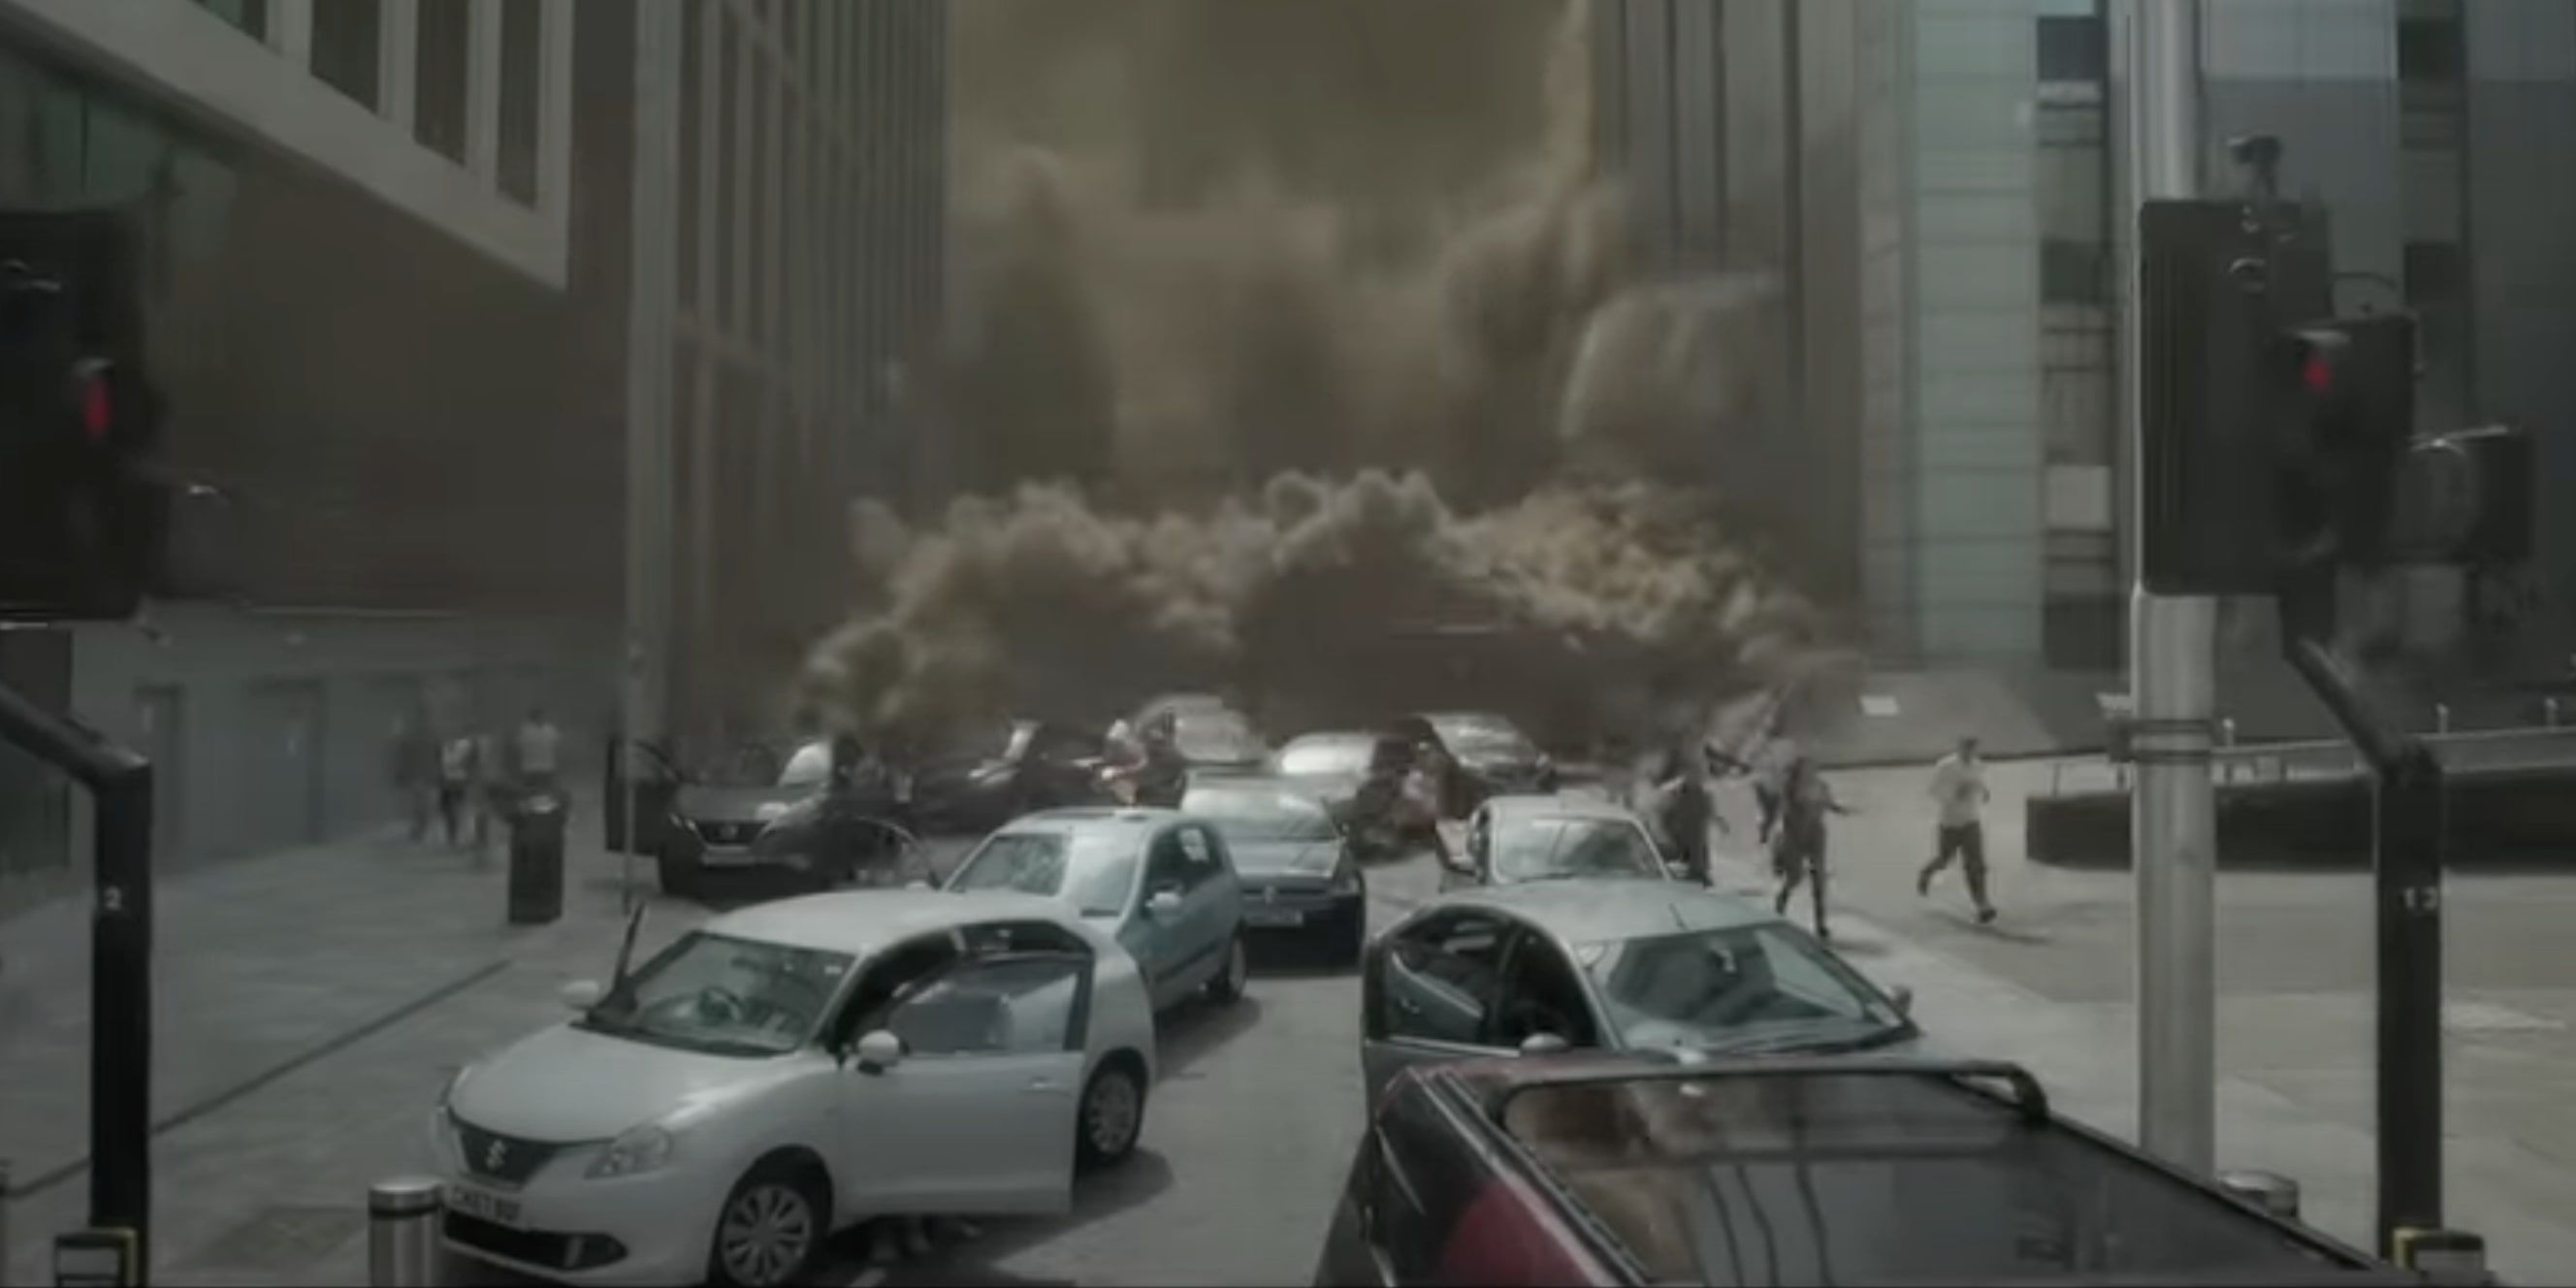 Uma gigantesca tempestade de areia causa caos em Londres no novo trailer de Doctor Who.